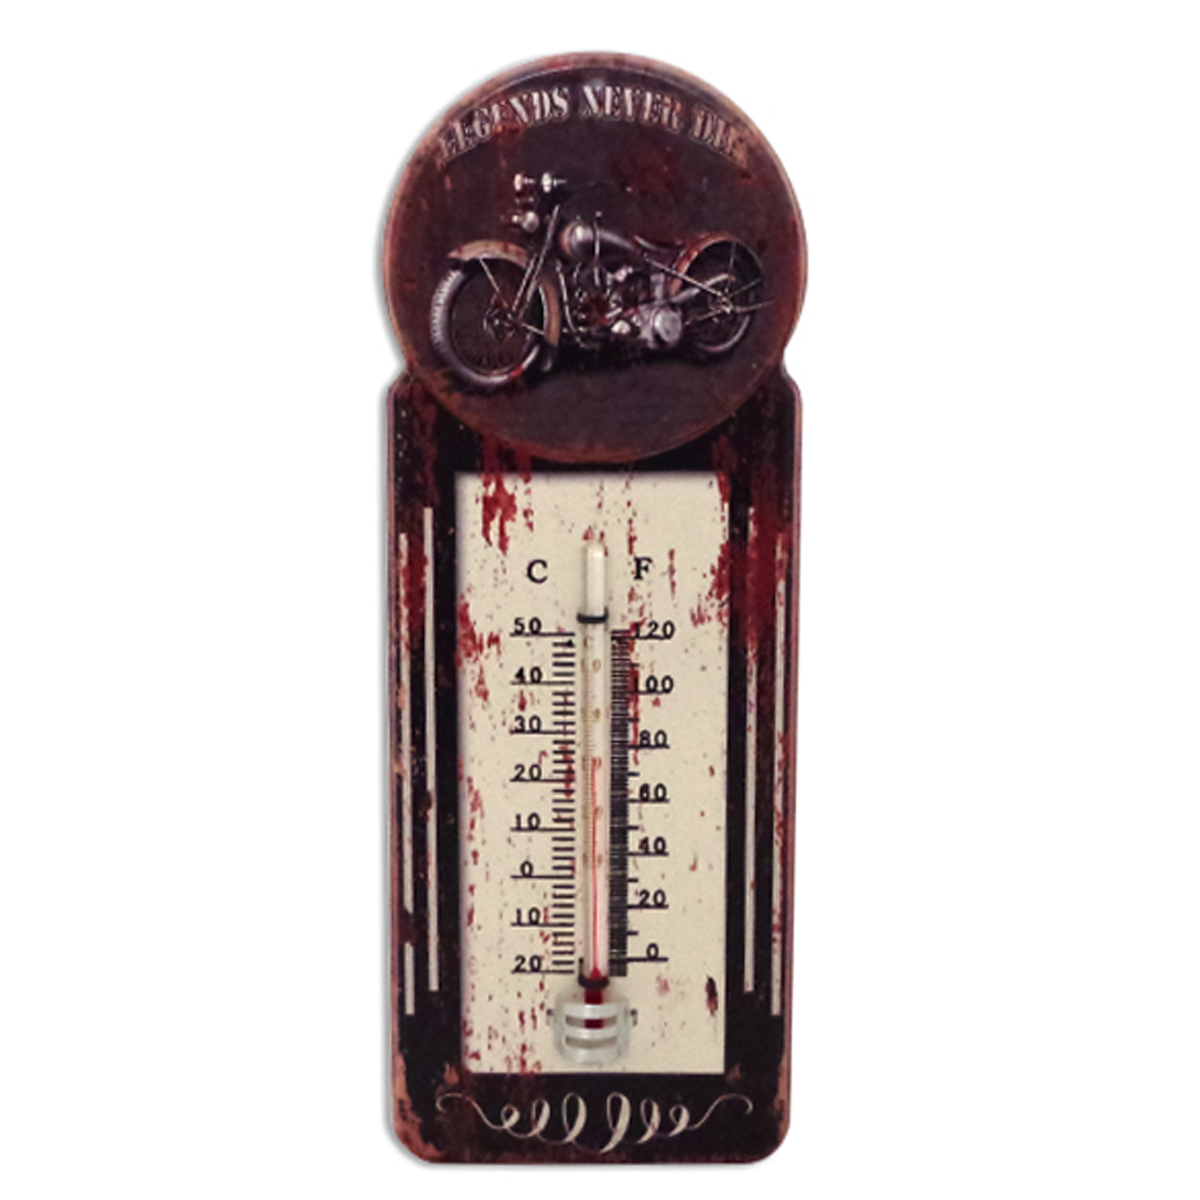 Thermomètre métal vintage \'Legends never die\' marron - 29x10 cm - [A1133]